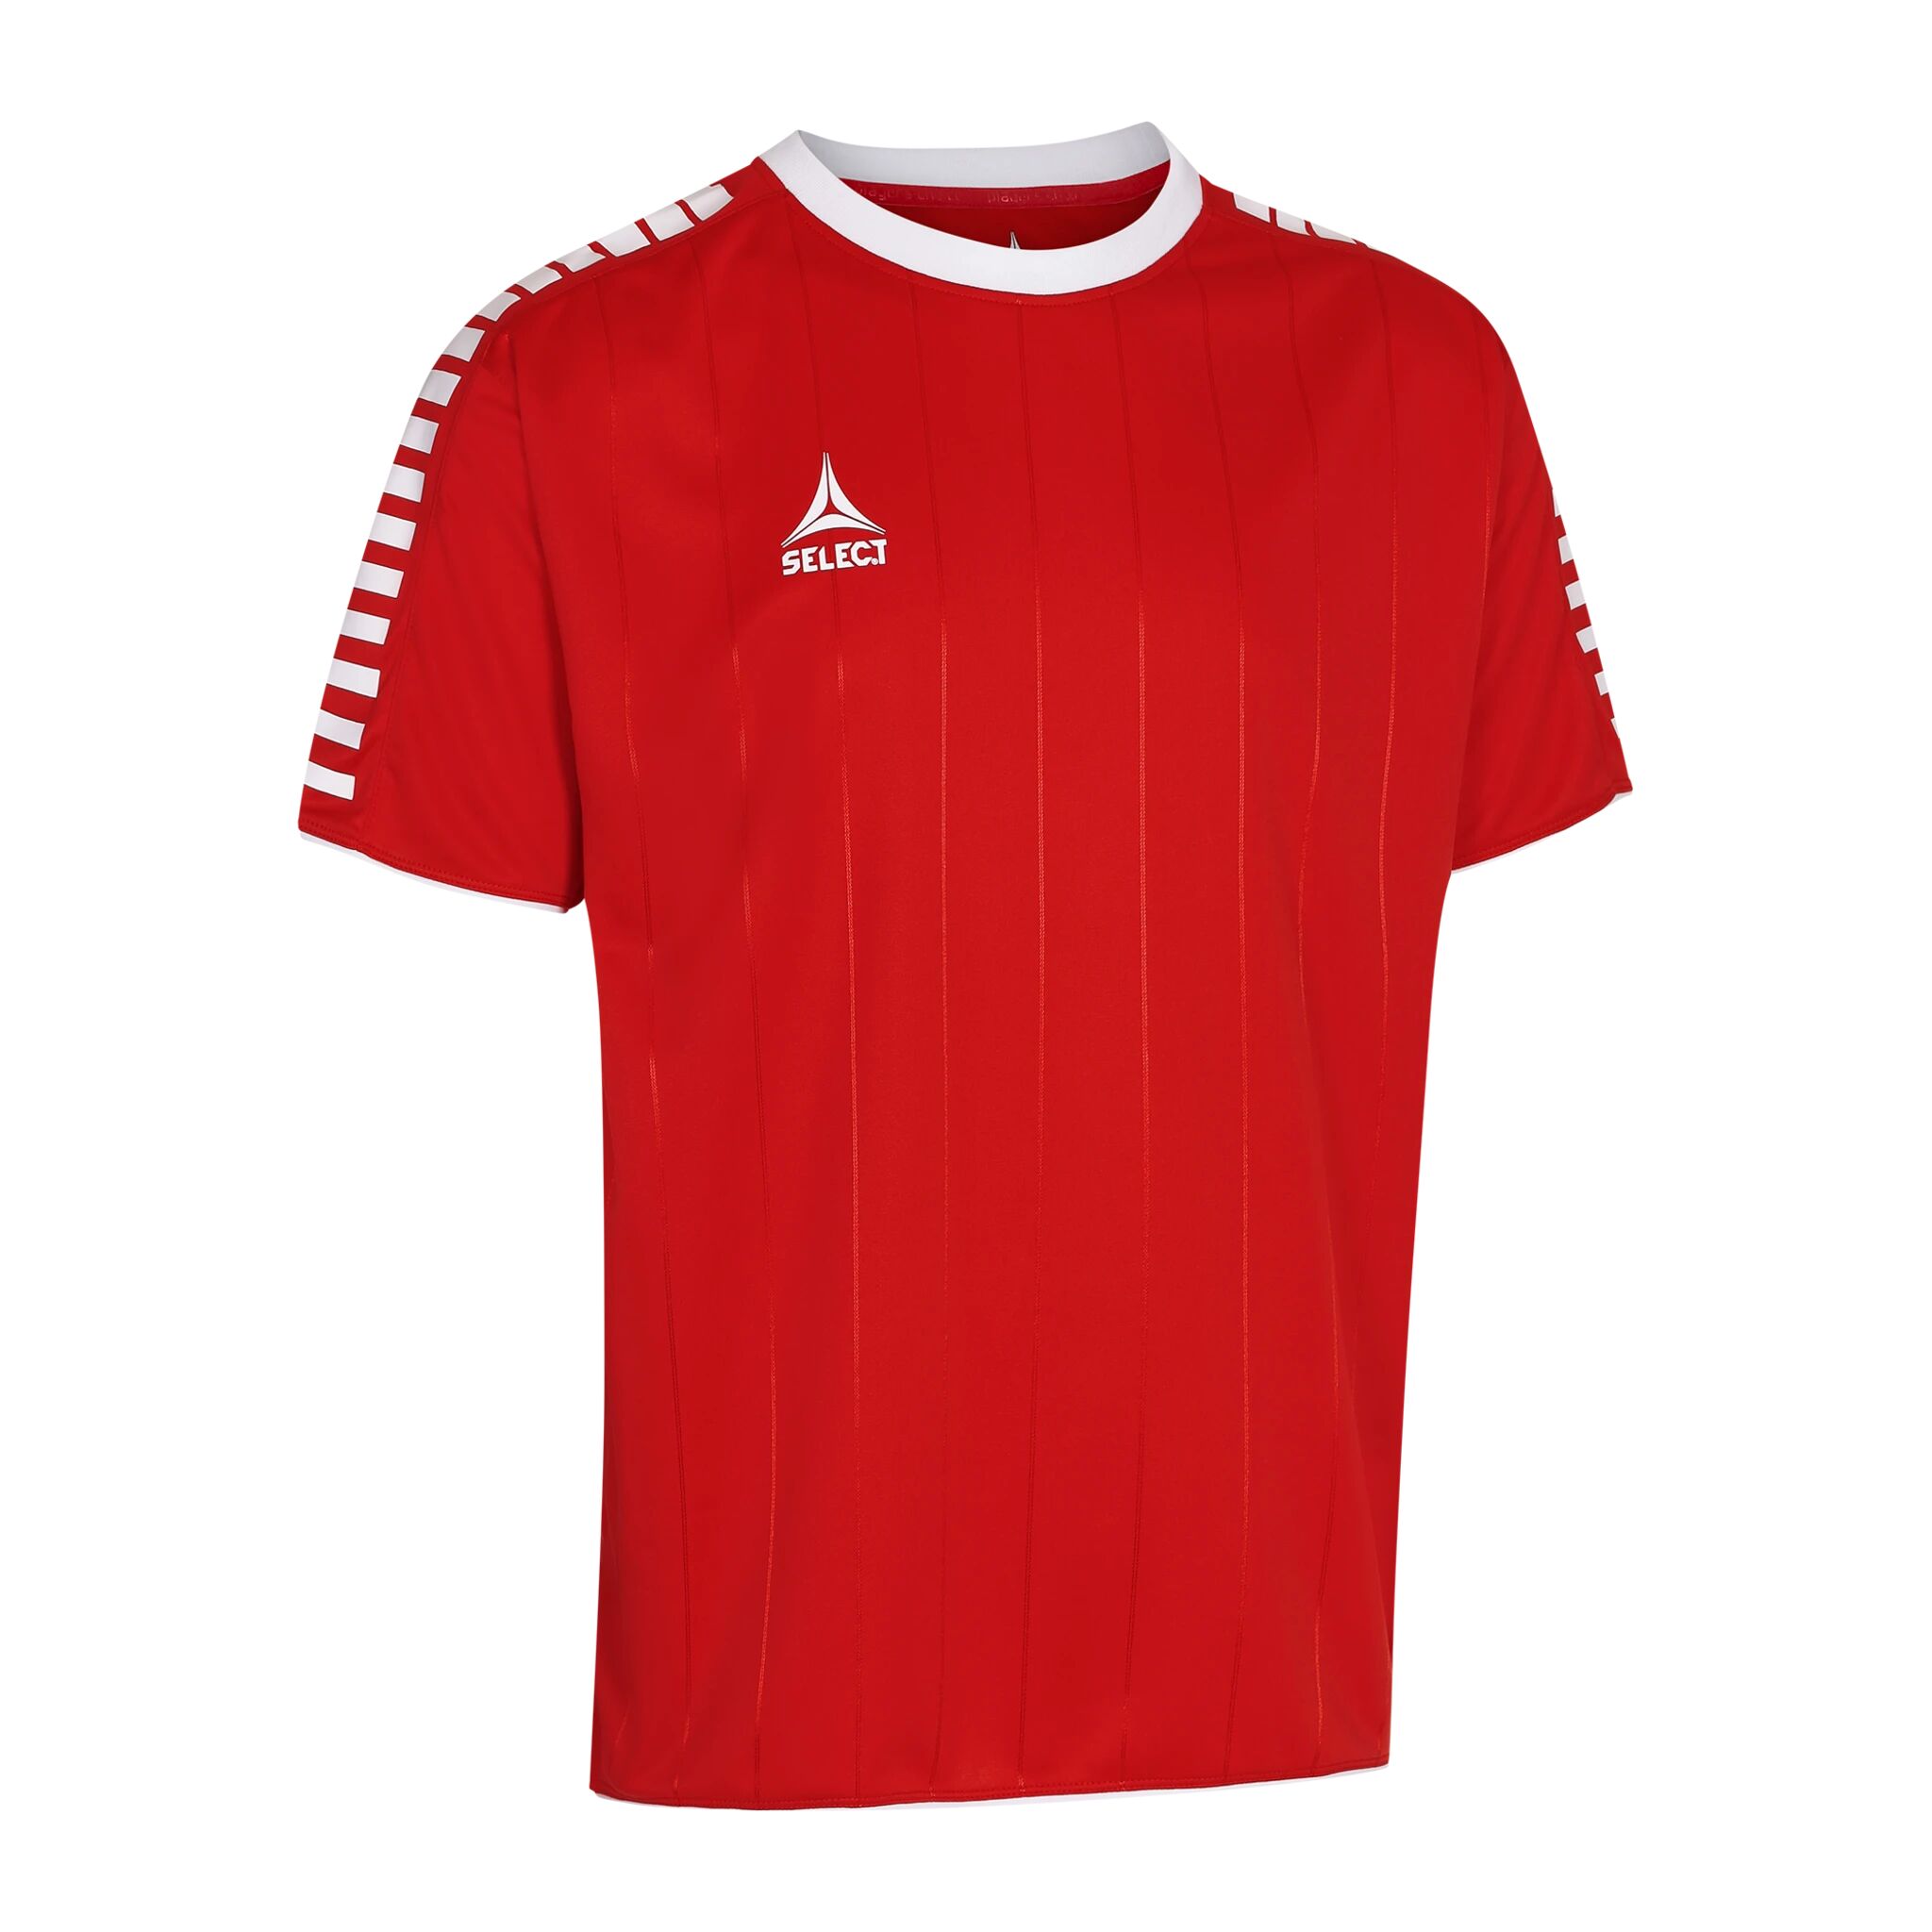 Select Player shirt S/S Argentina, fotballtrøye senior 164 RED